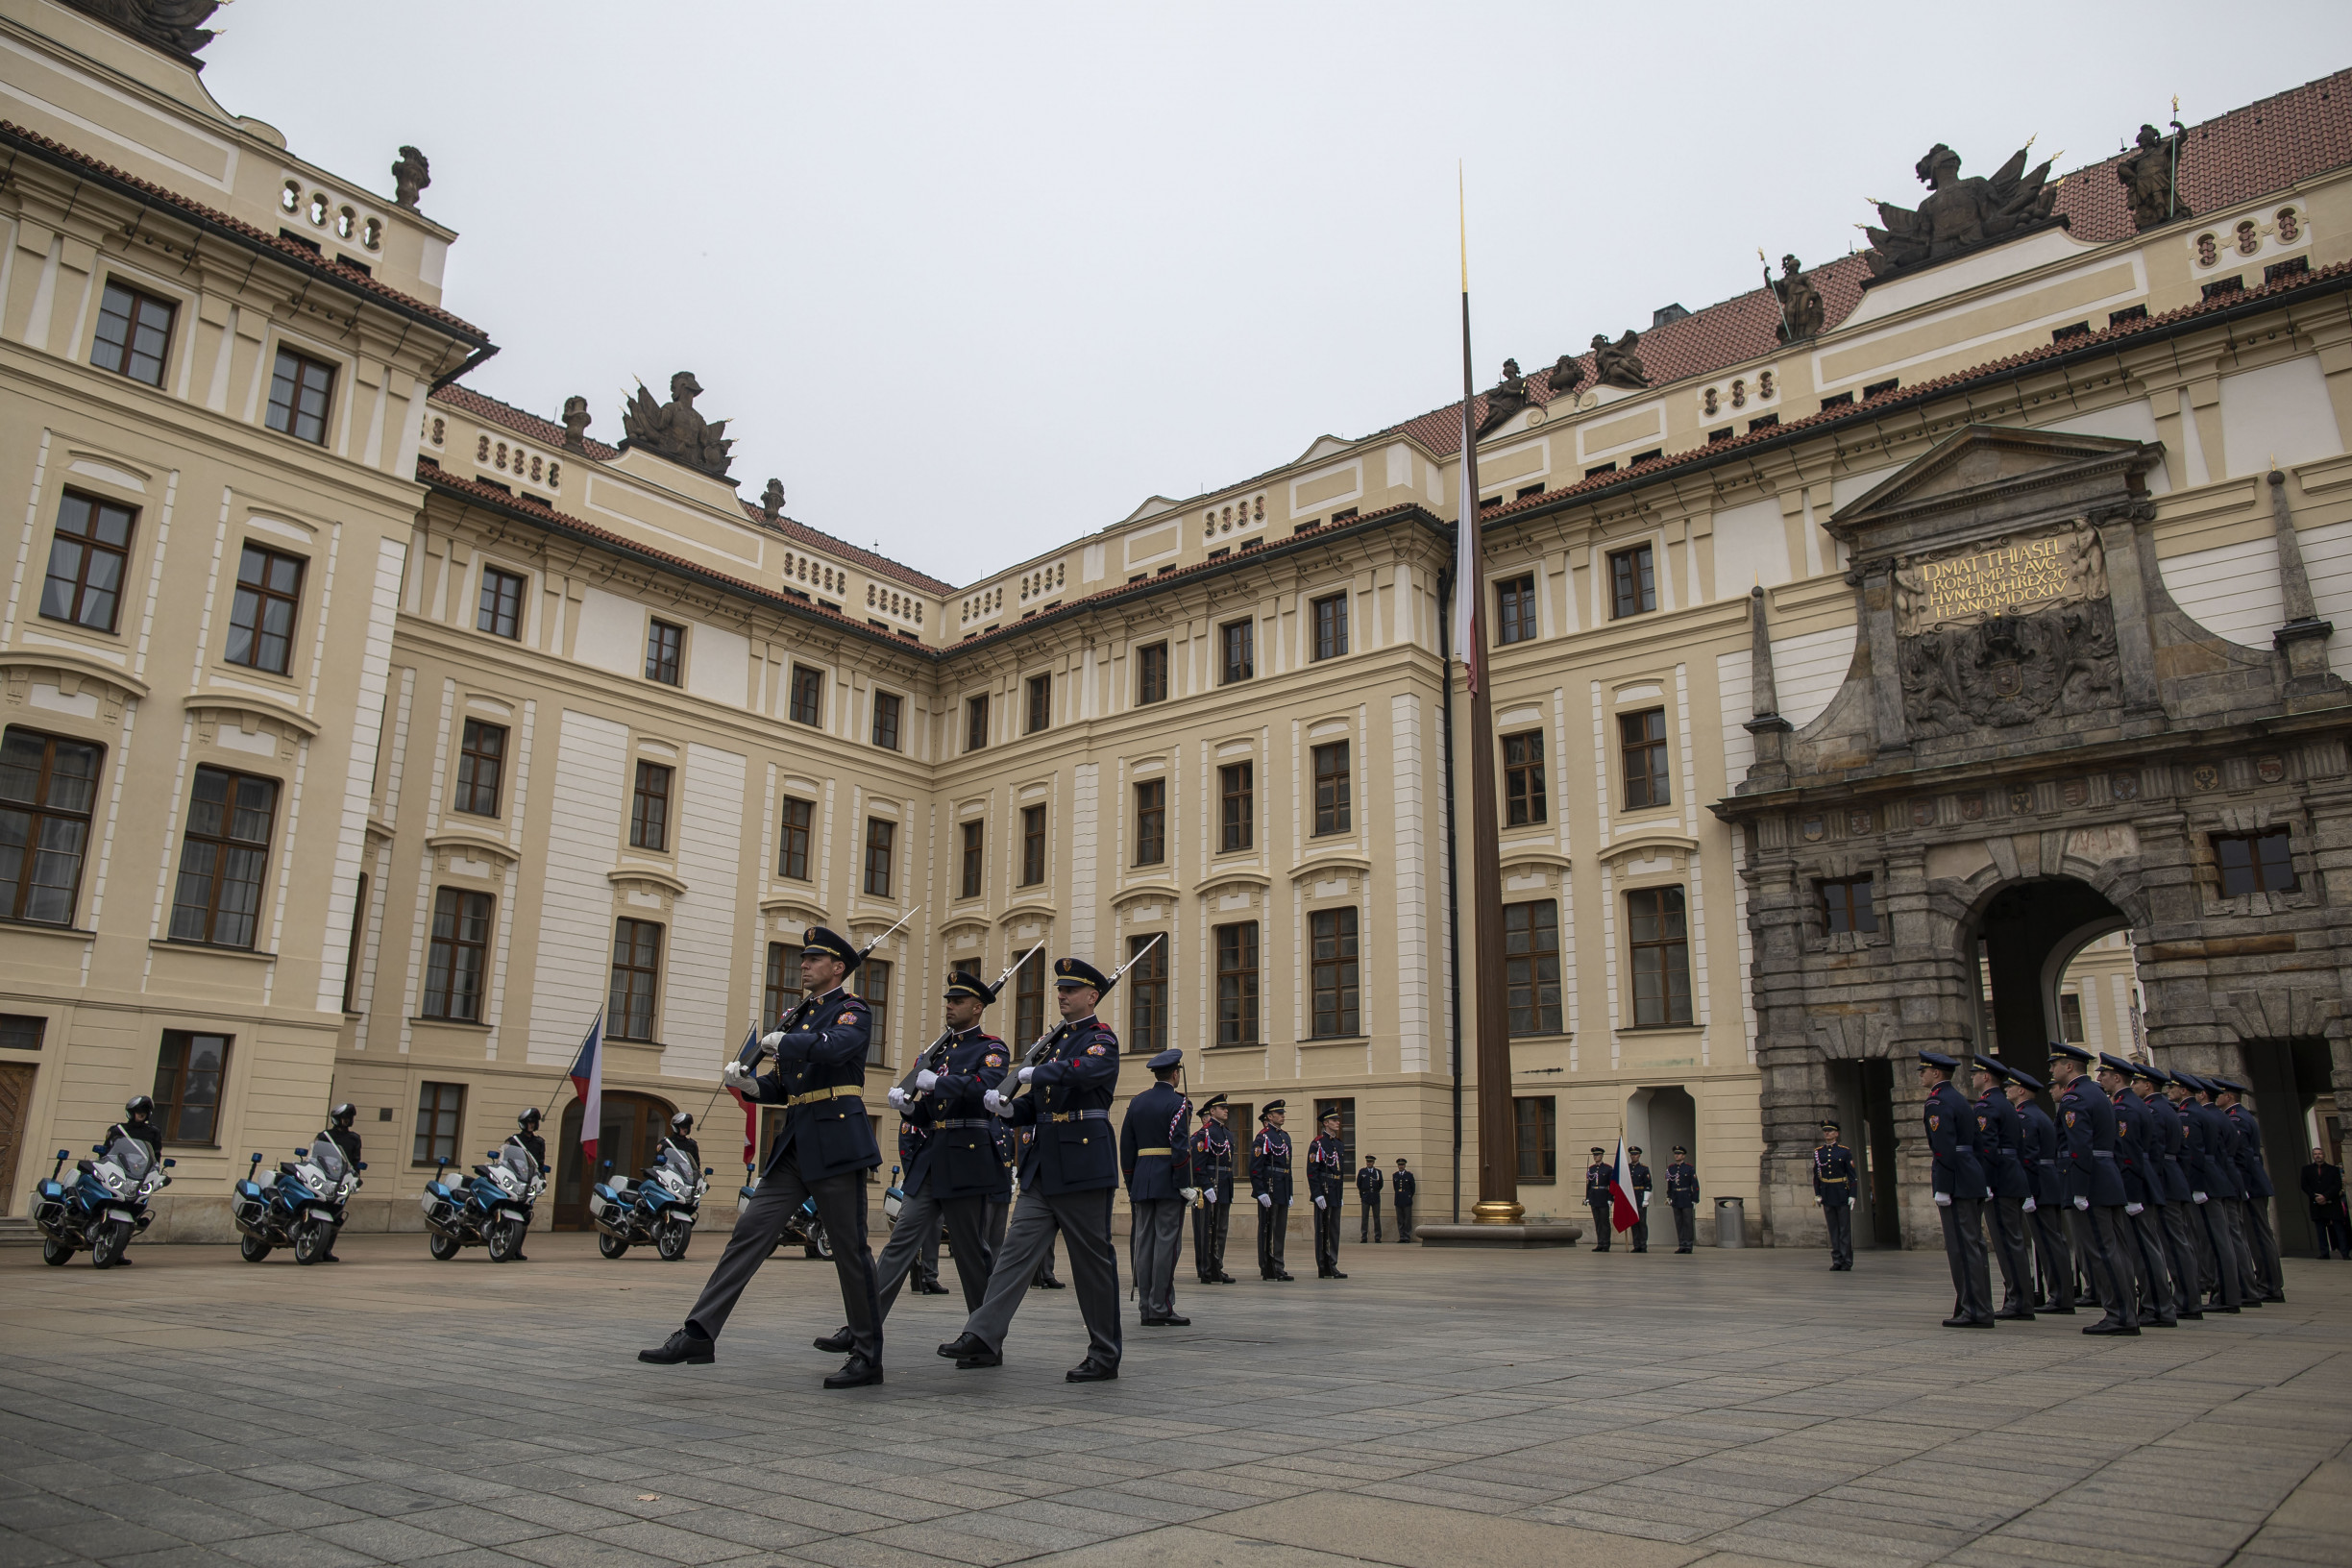 Hrad čtyřnásobně zdražil vnitru pronájem Španělského sálu. Policisté a hasiči musí svá ocenění předávat jinde